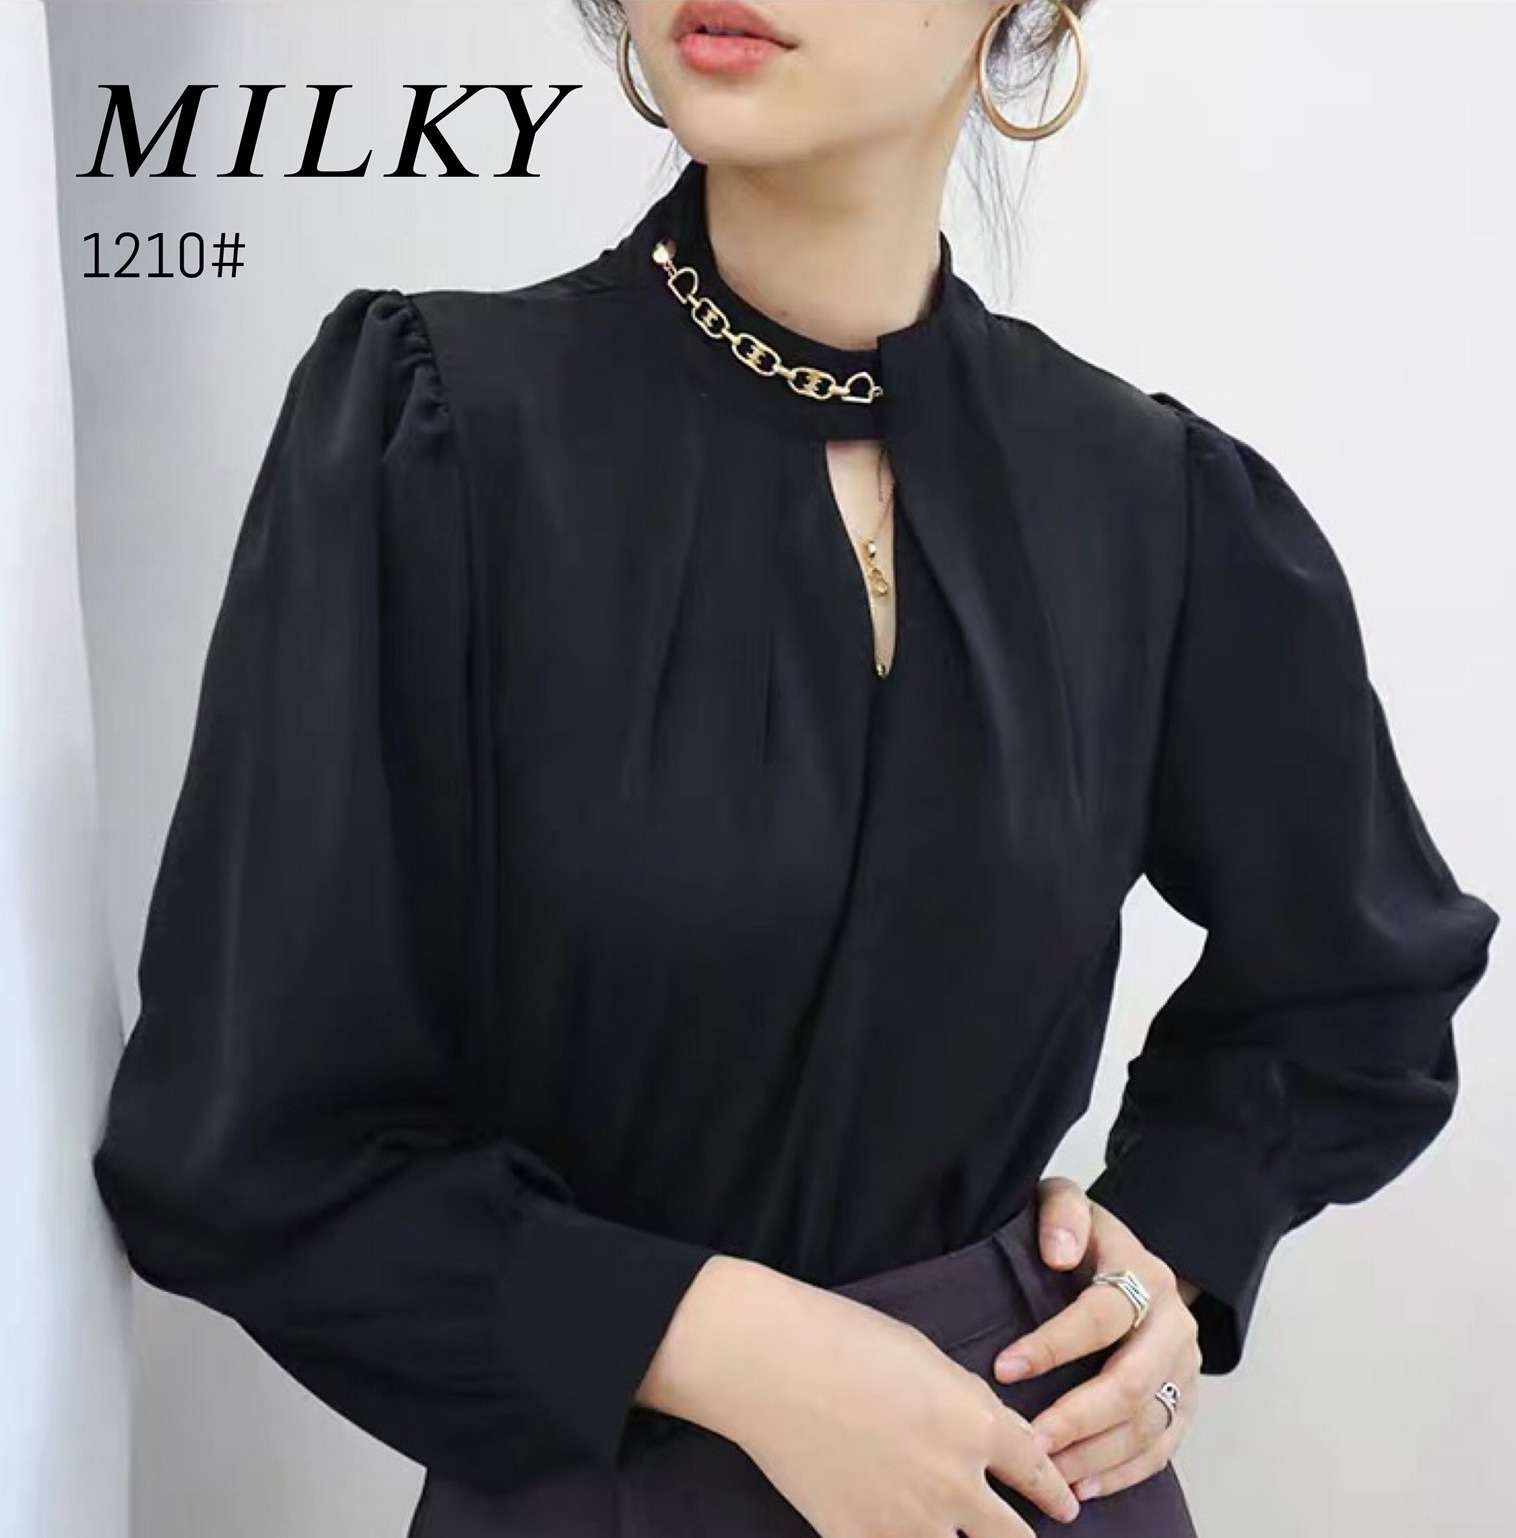 New fashionเสื้อทำงานคอจีนใส่สบายผ้าชีฟอง แขนยาว สไตล์ เสื้อทำงาน ผ้าสวมใส่สบาย(Milky brand)????